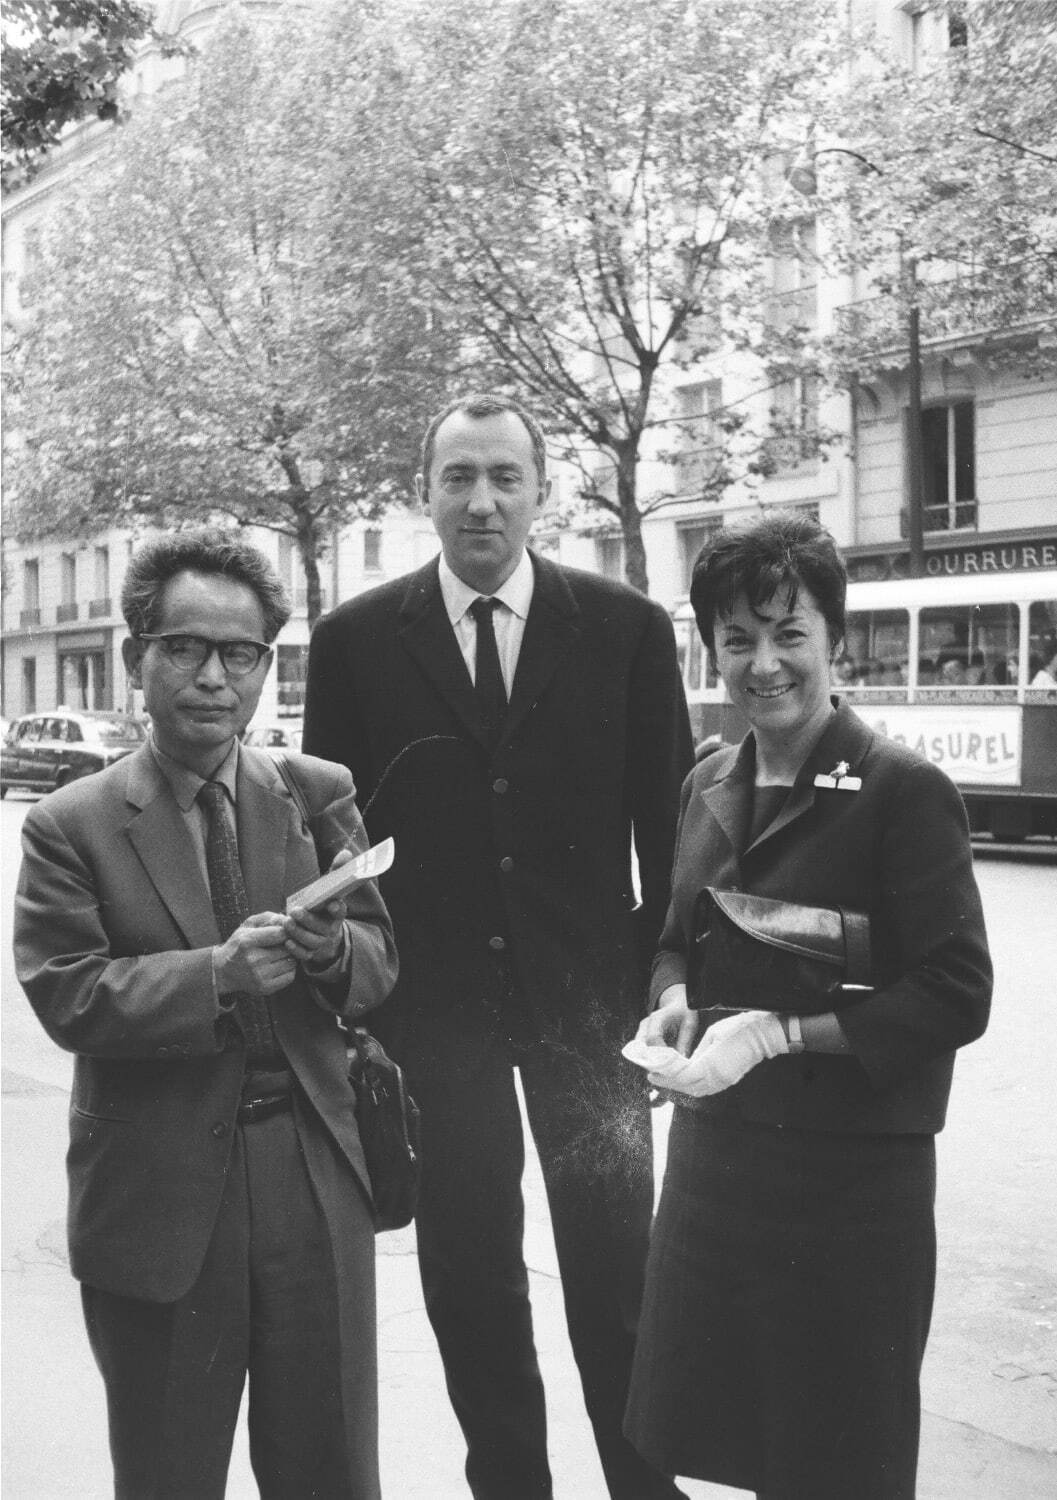 森田子龍(左)とスーラージュ(中央)
1963年、パリにて